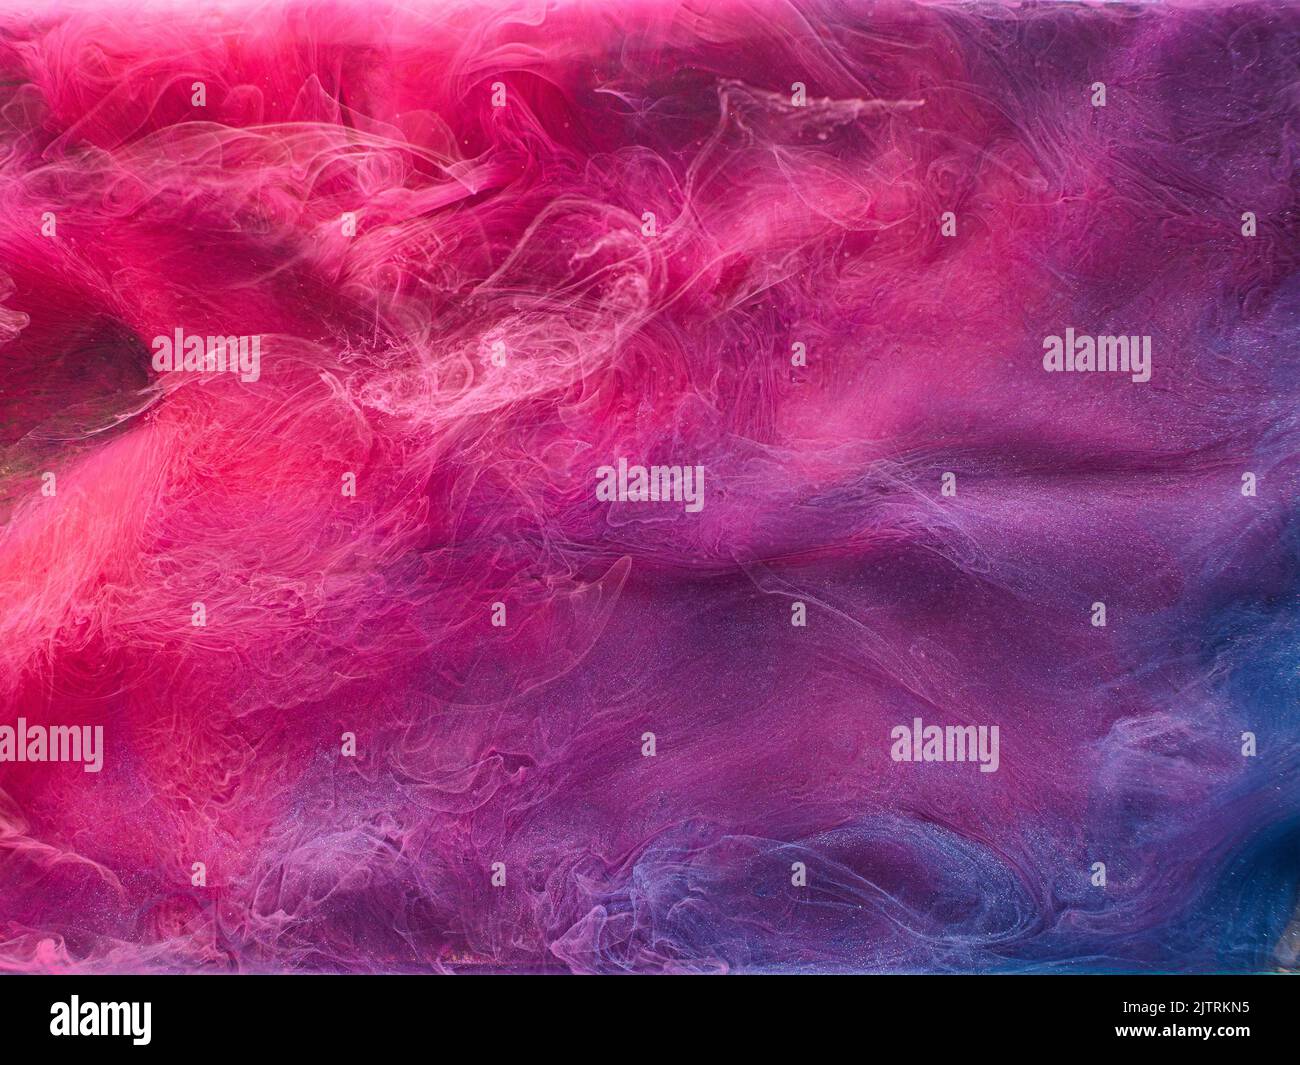 Rauchverlust. Verwunschene Luft. Magentarote violette Rauchwolke. Lebendige  abstrakte Kunst Hintergrund Stockfotografie - Alamy